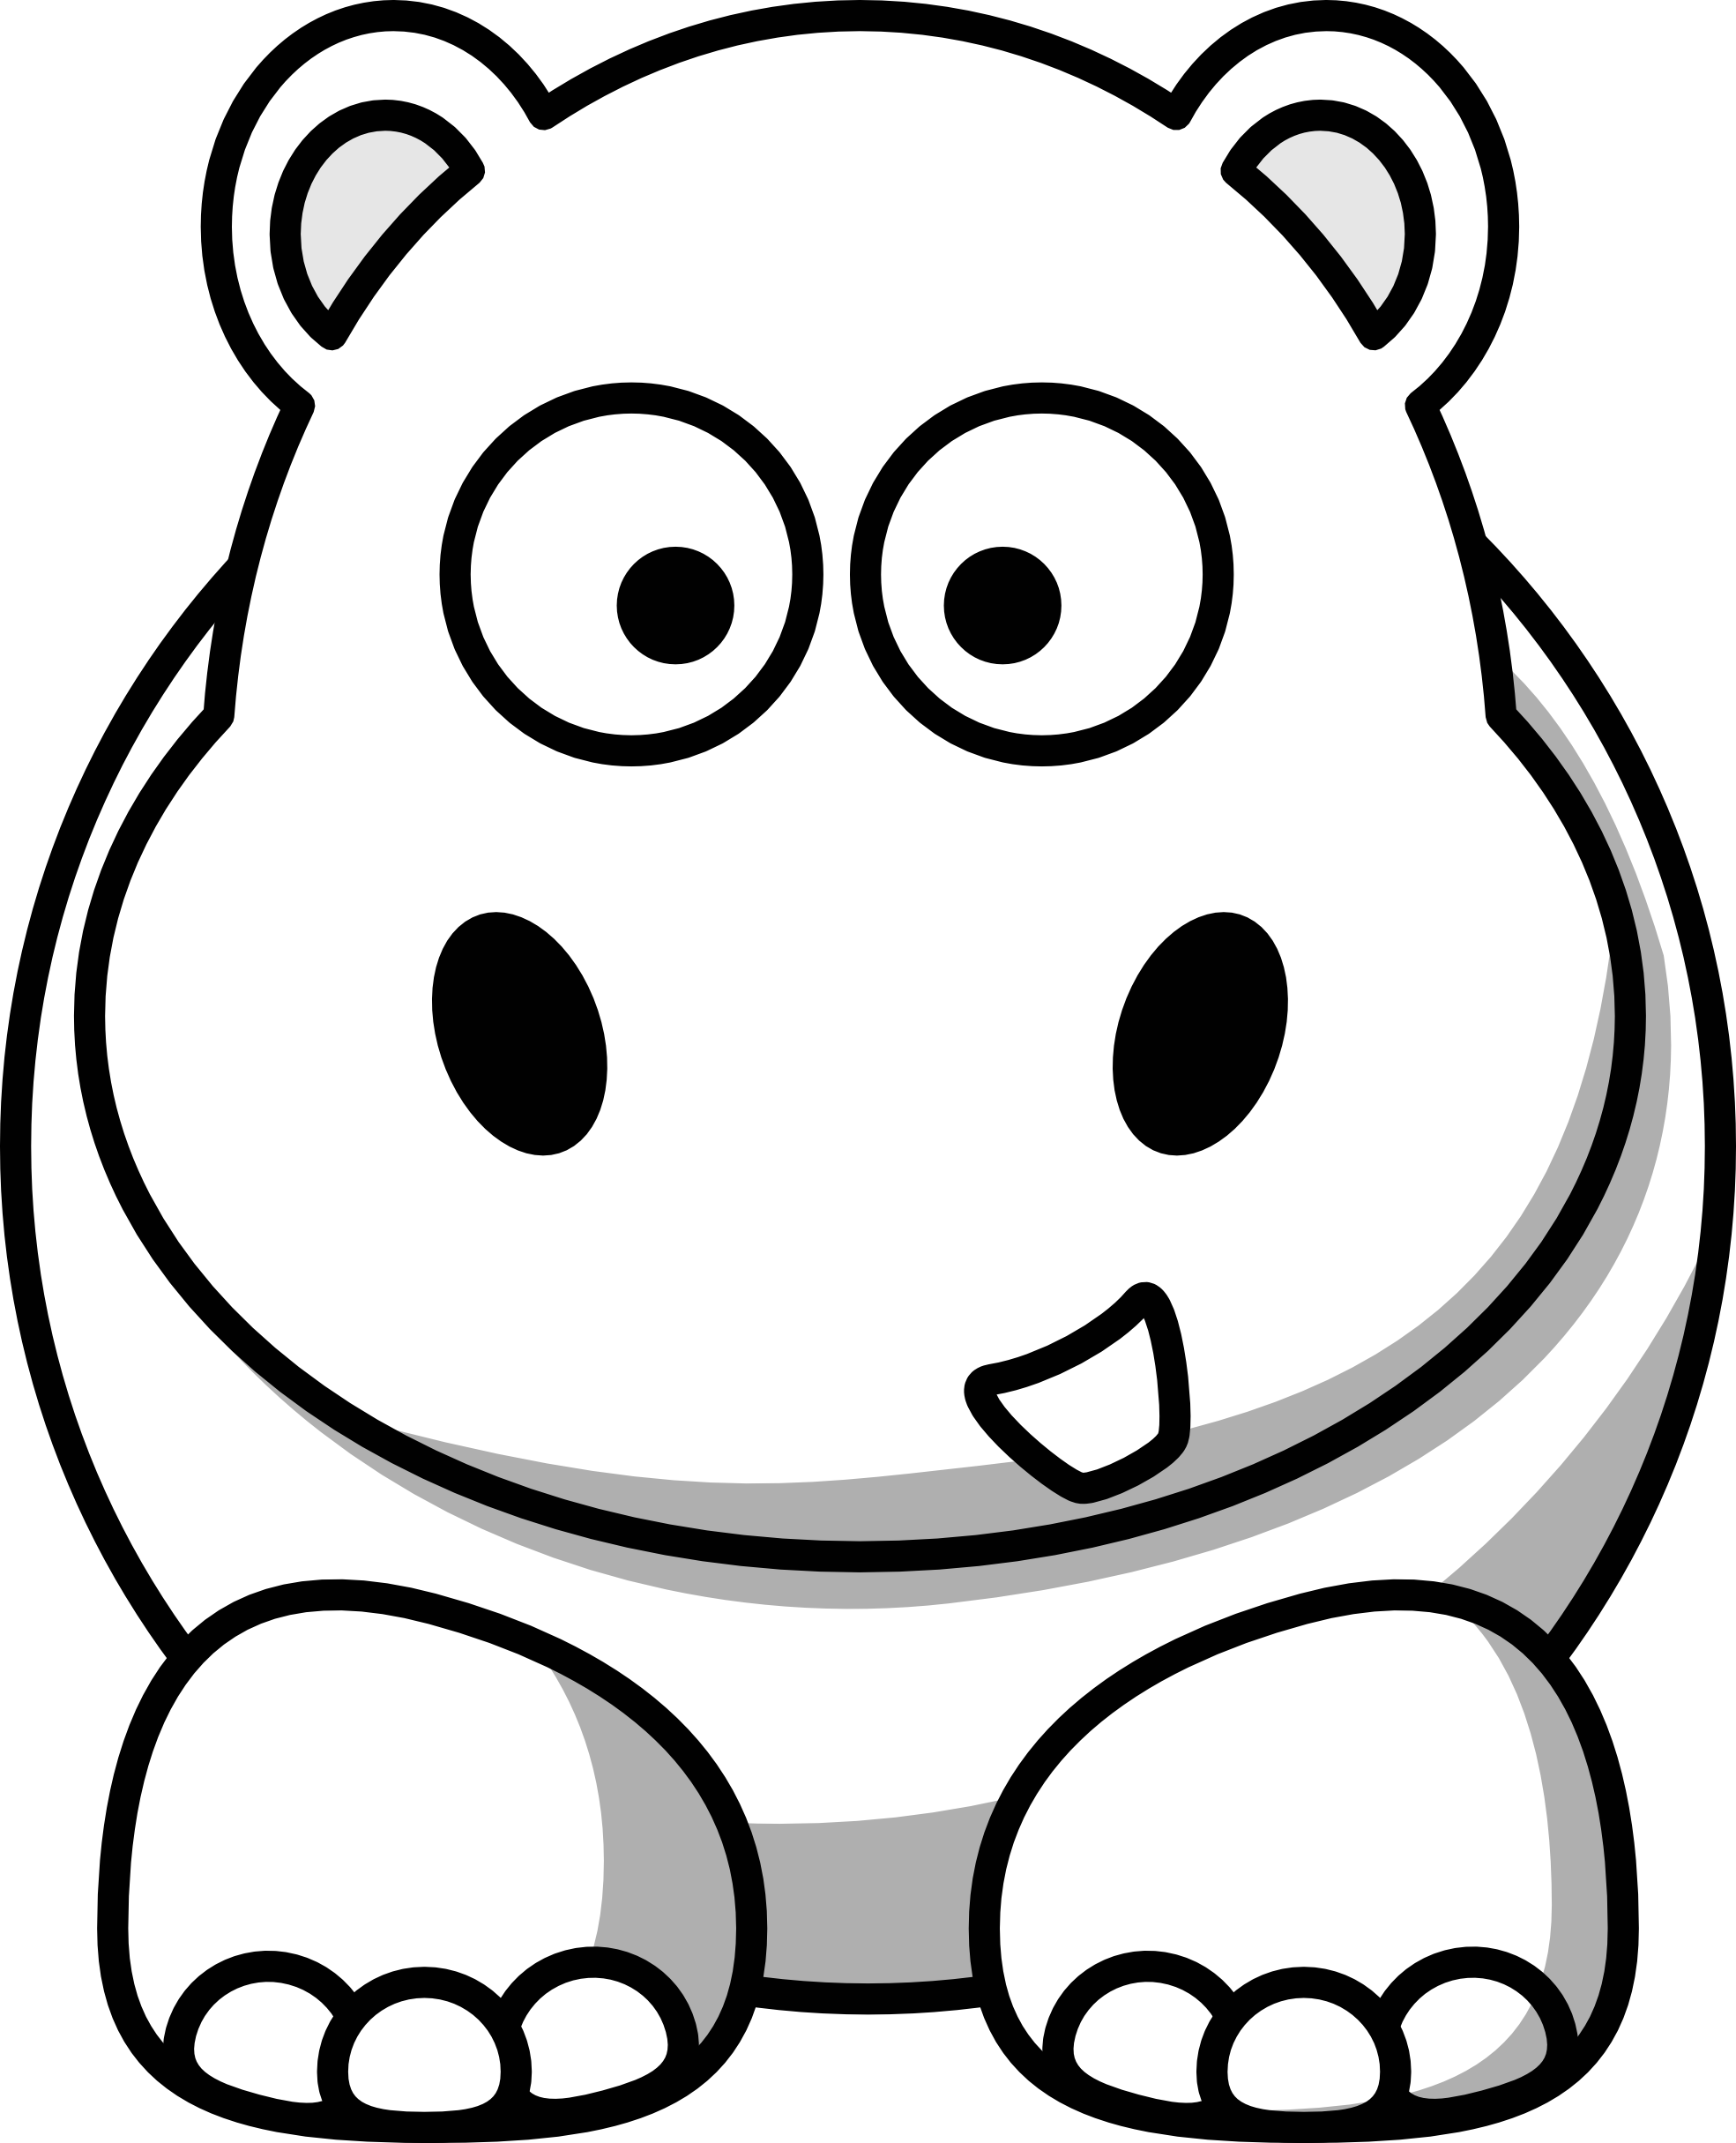 Coloriage Hippopotame #8679 (Animaux) – Dessin à colorier – Coloriages